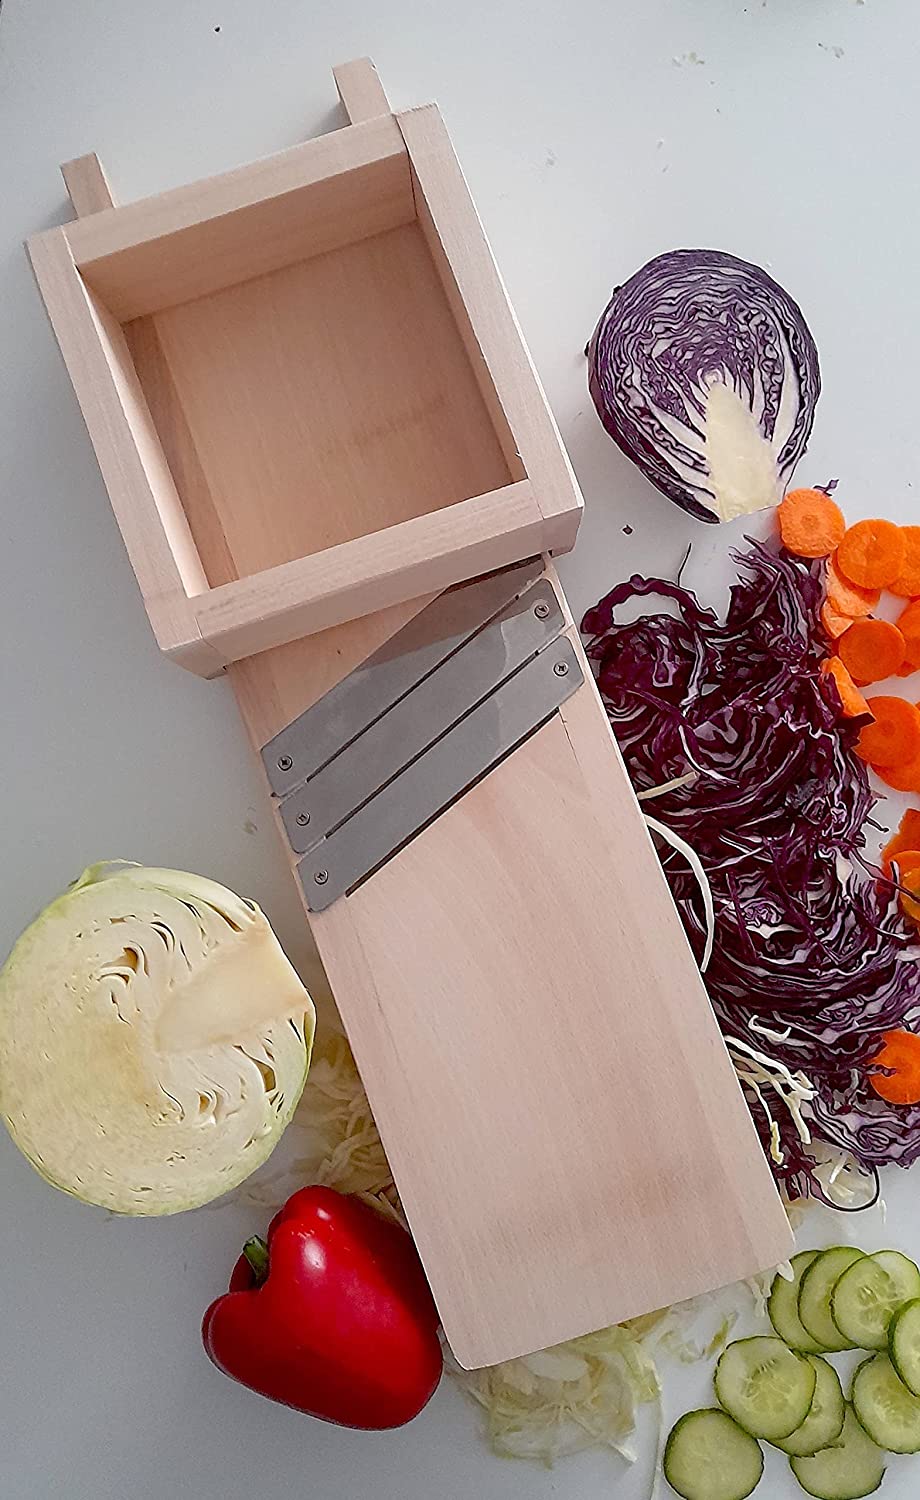 Kohlschneider, Gemüsehobel für Sauerkraut, Salate, Krautsalat - Modell mit flacher Oberfläche